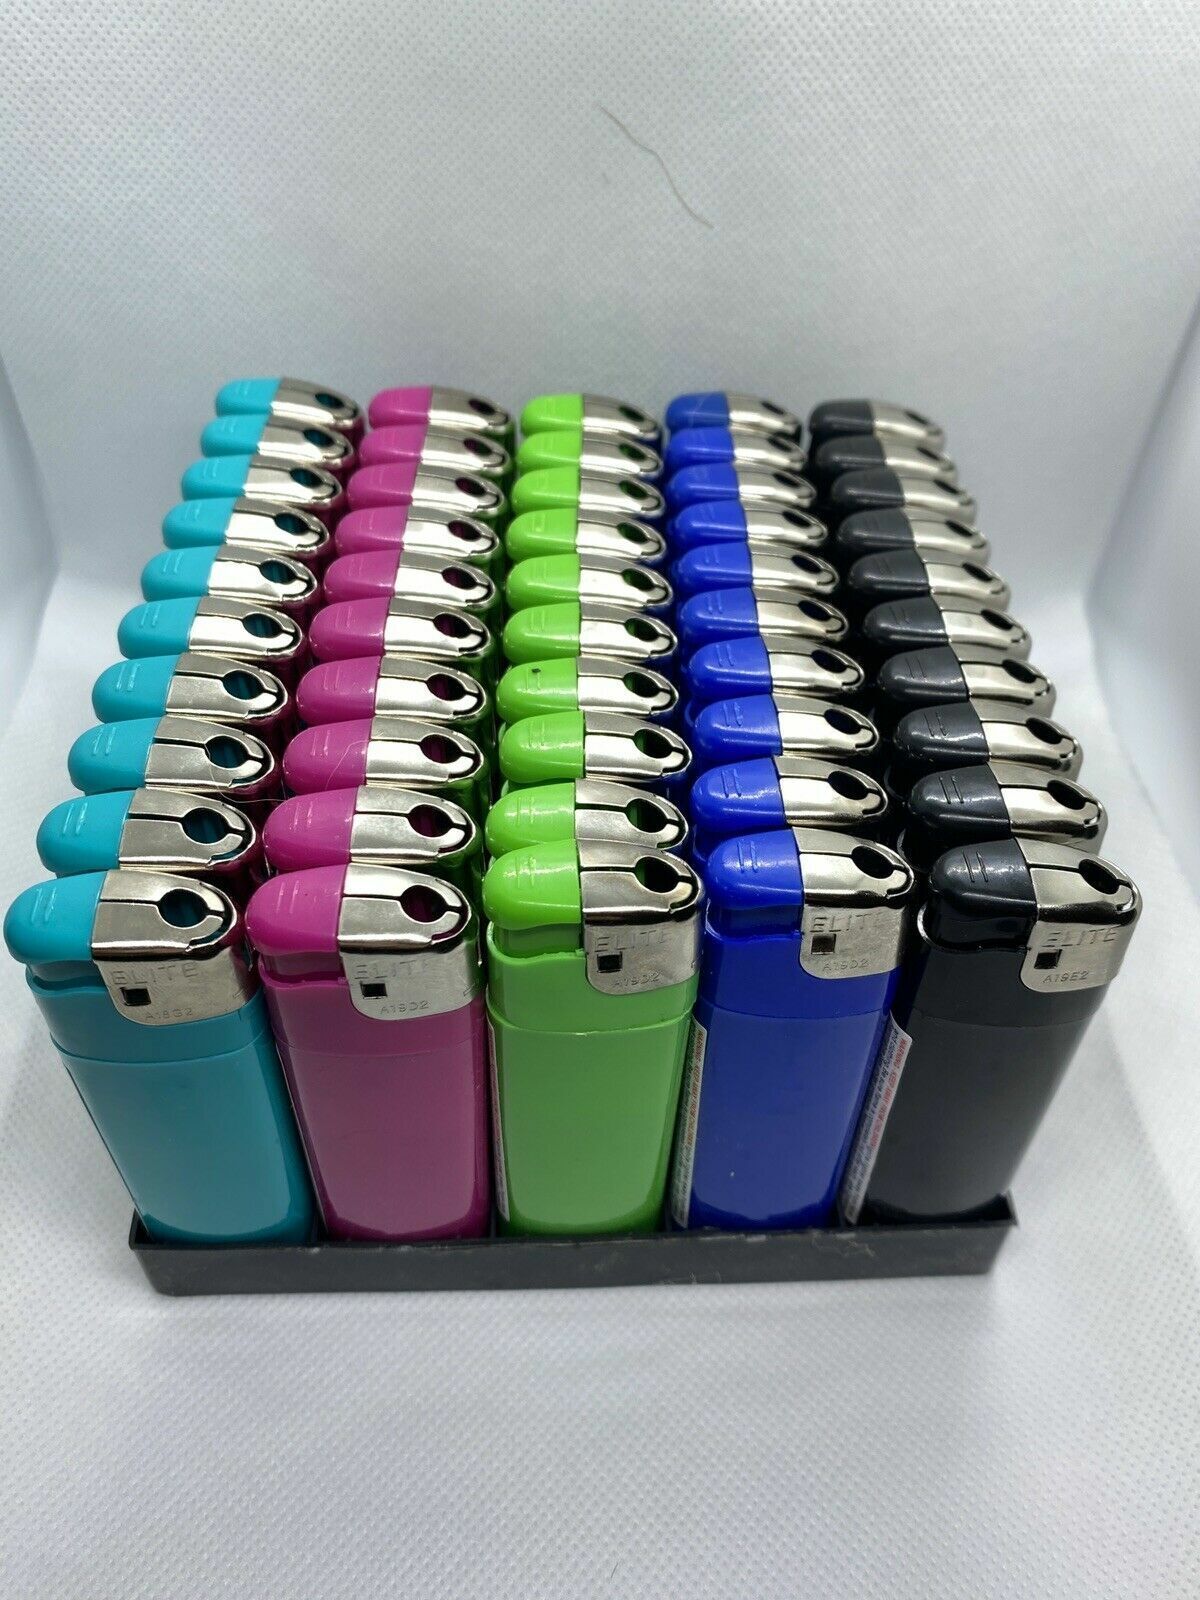 Disposable lighter - 200 Bulk Wholesale Lighters - Assorted Colors Wholesale Lot